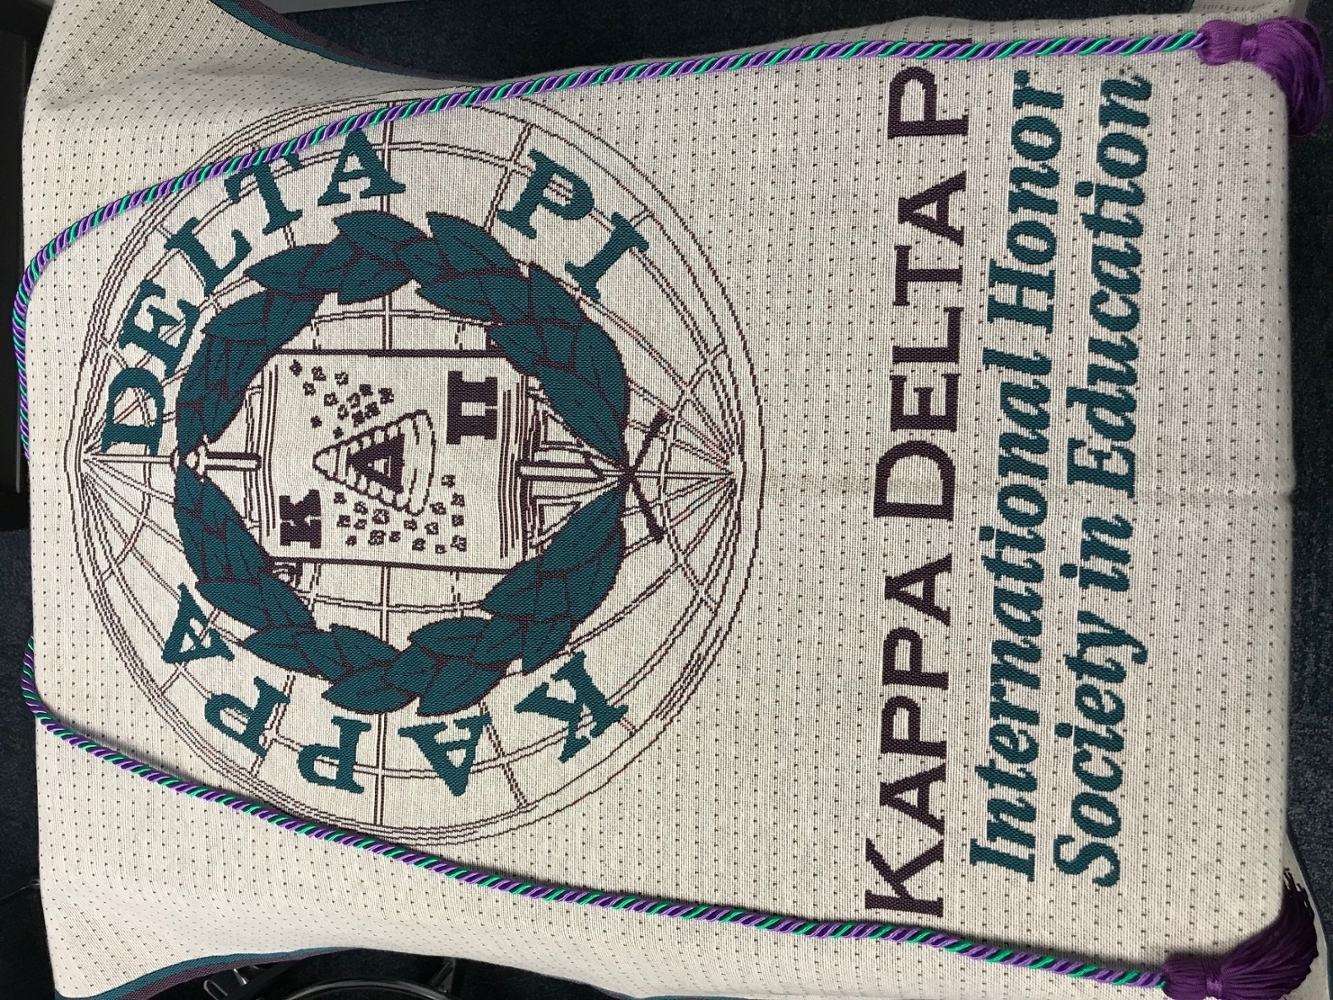 Kappa Delta Pi banner and cord